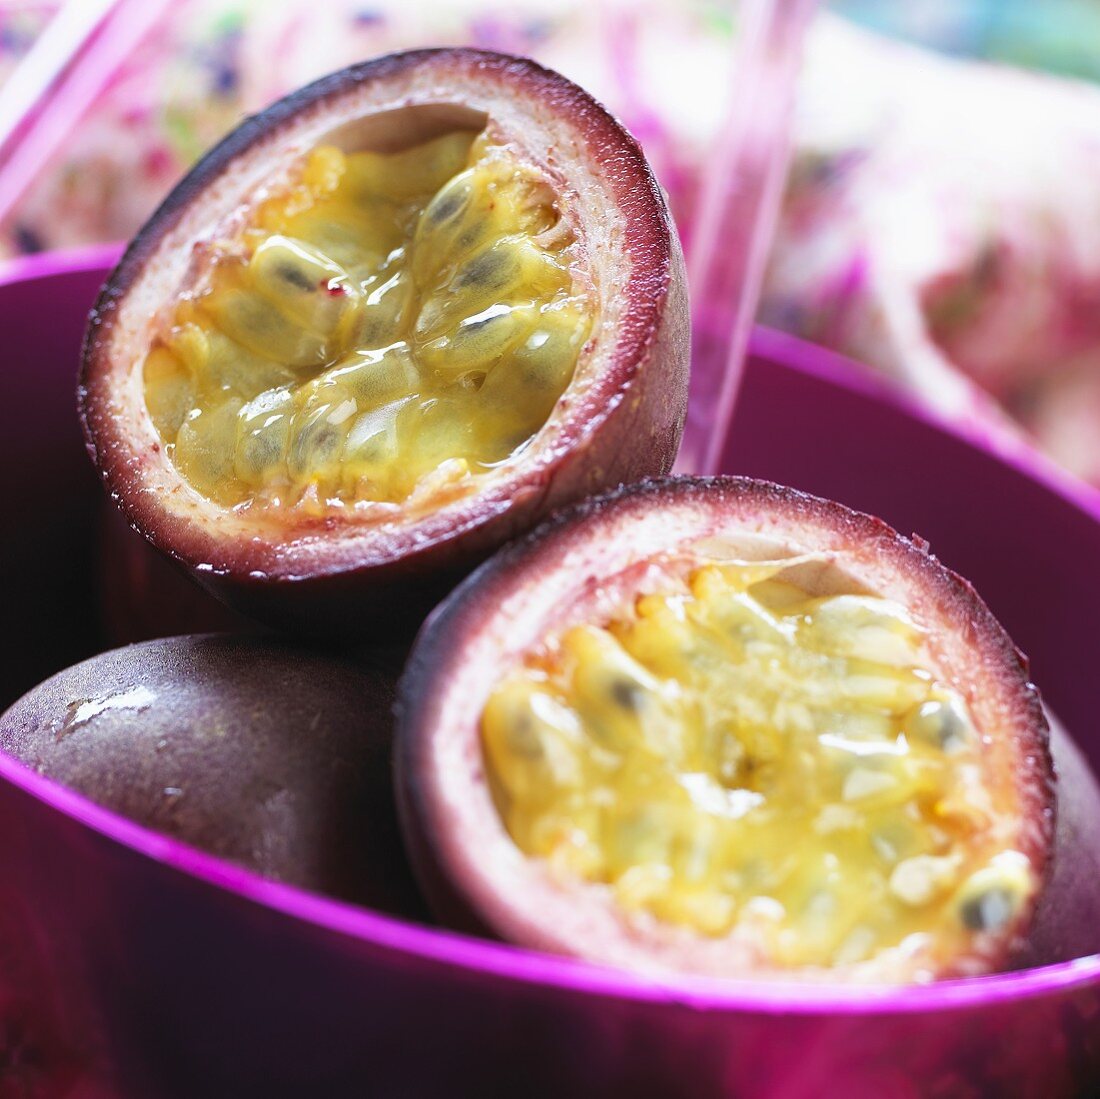 Purple passion fruit (Passiflora edulis)